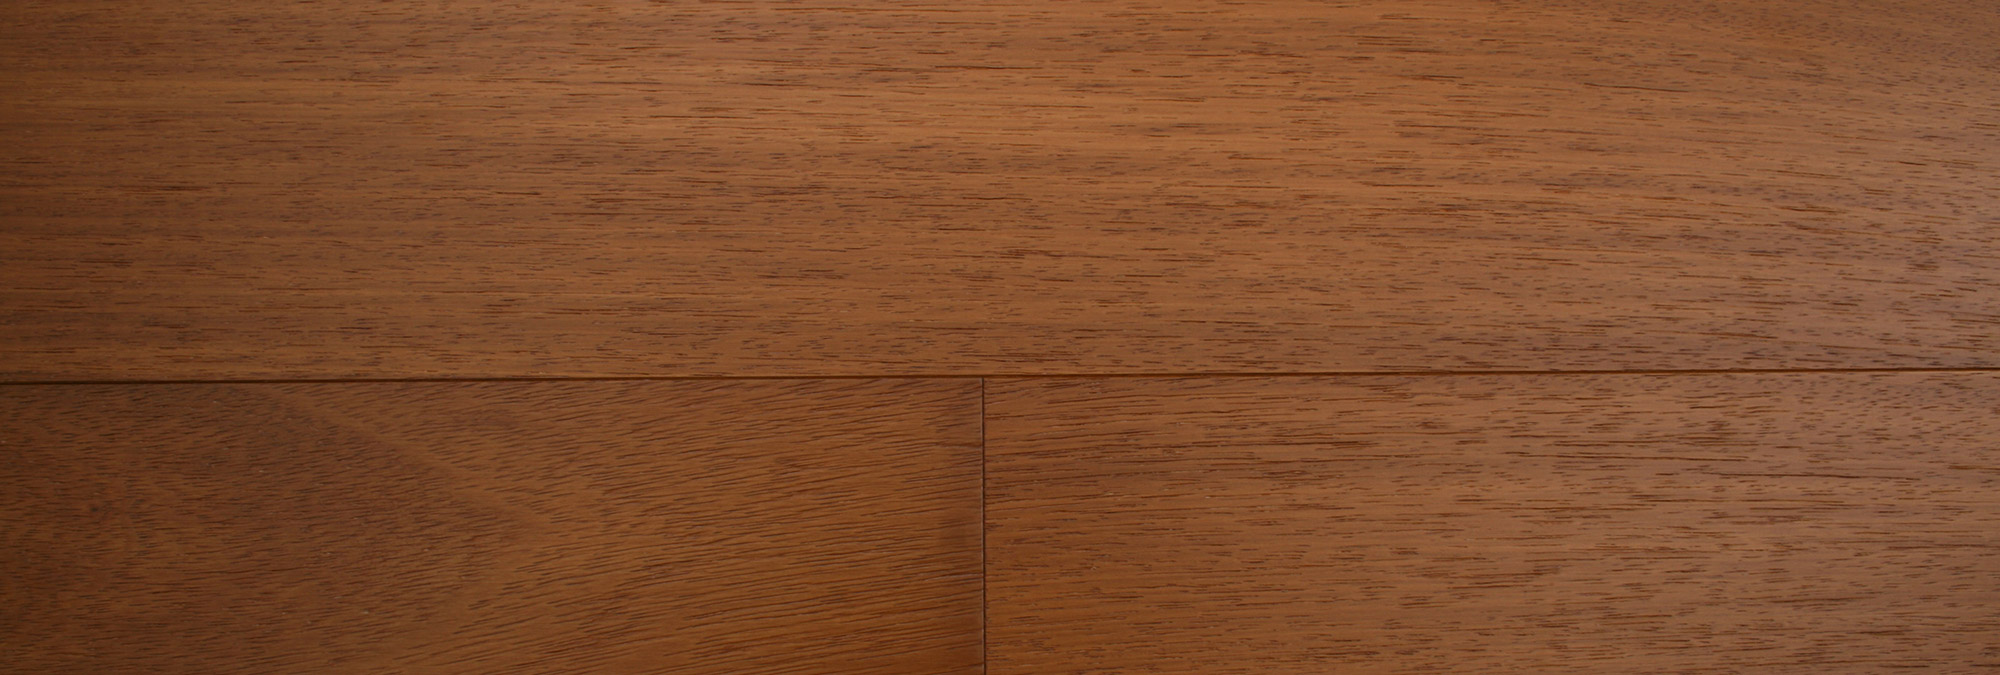 pavimenti in legno Iroko